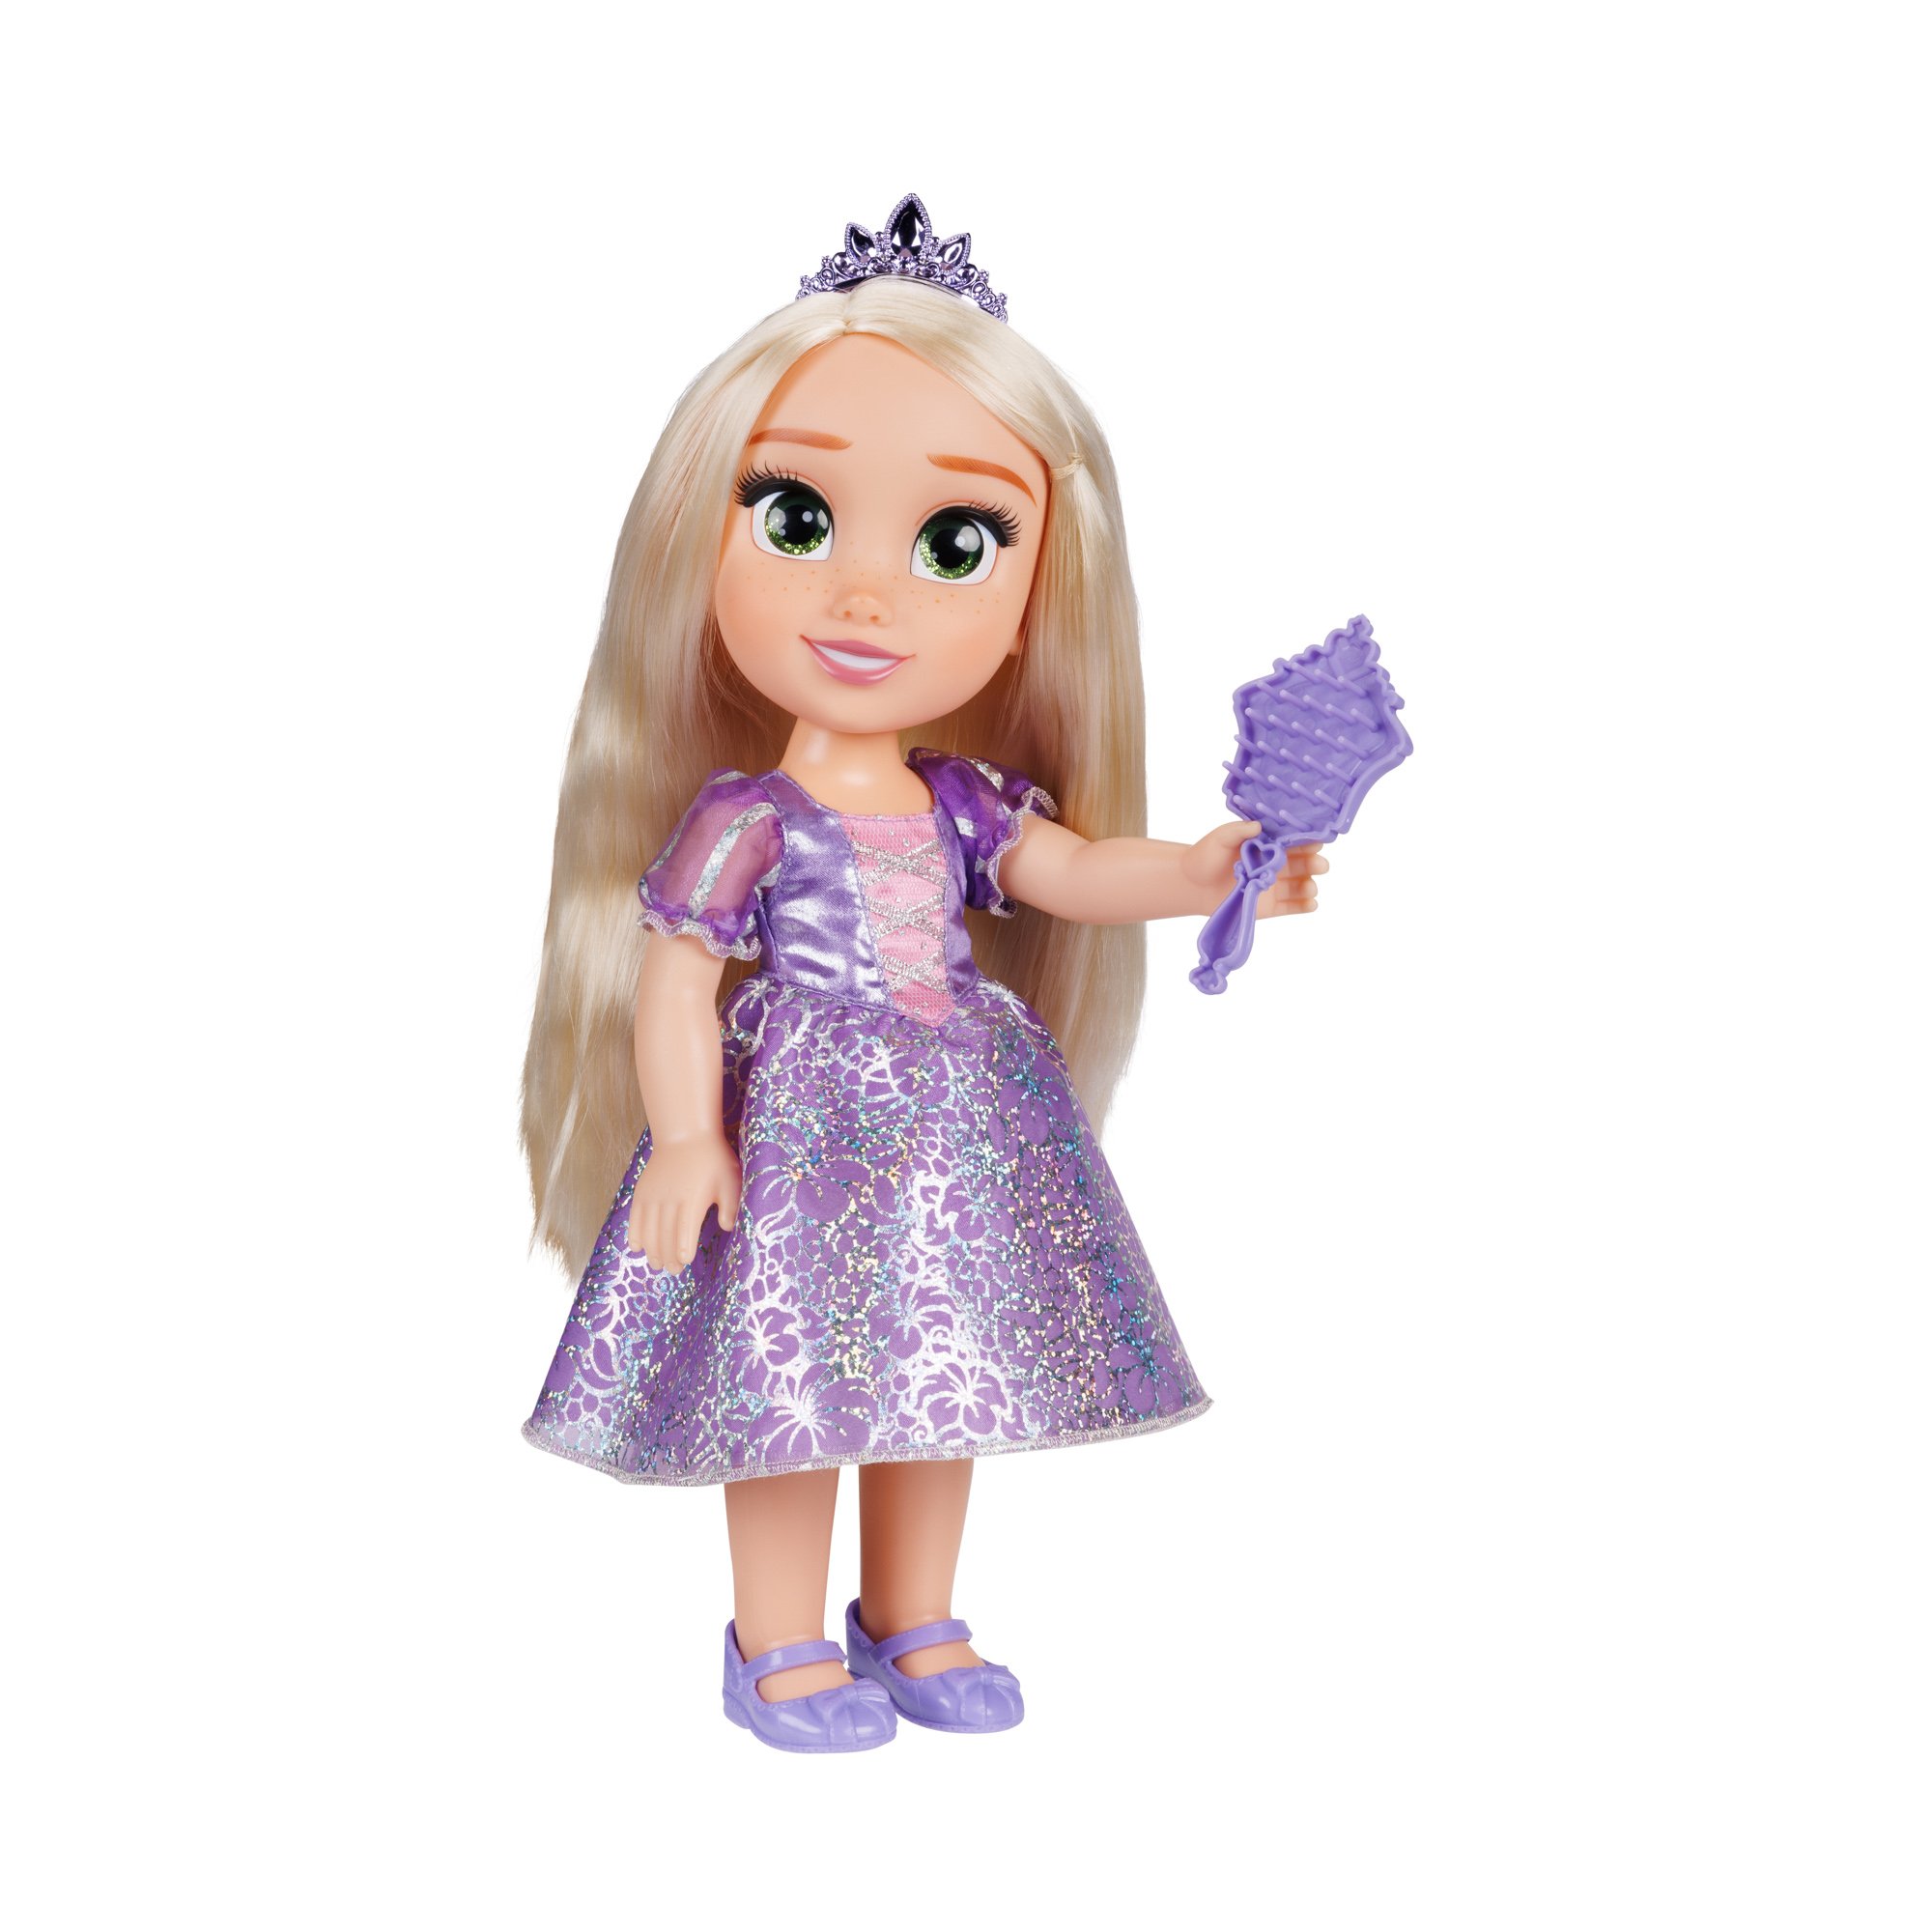 Disney Princess - Core Large 38 cm. - Rapunzel Doll (230154)